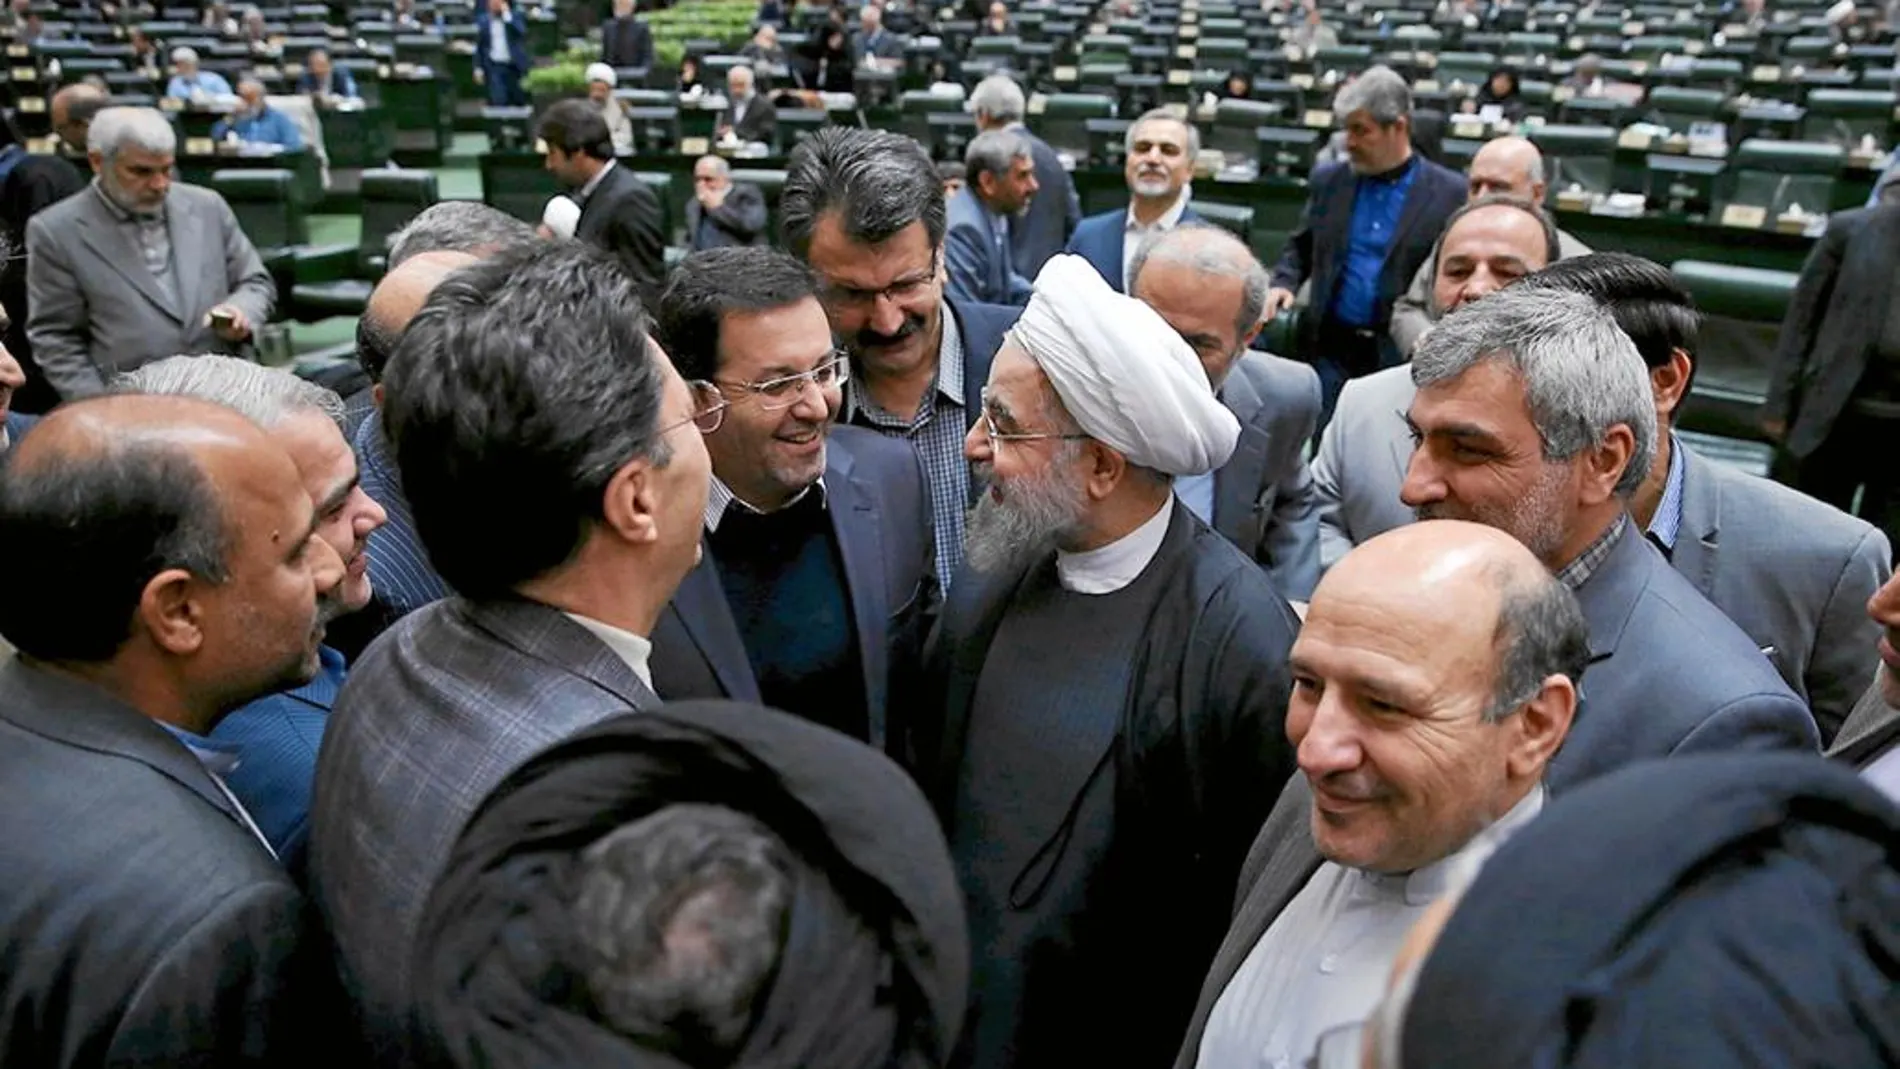 Mano tendida. Rohani quiso aplacar los temores de sus vecinos ante el ascenso iraní